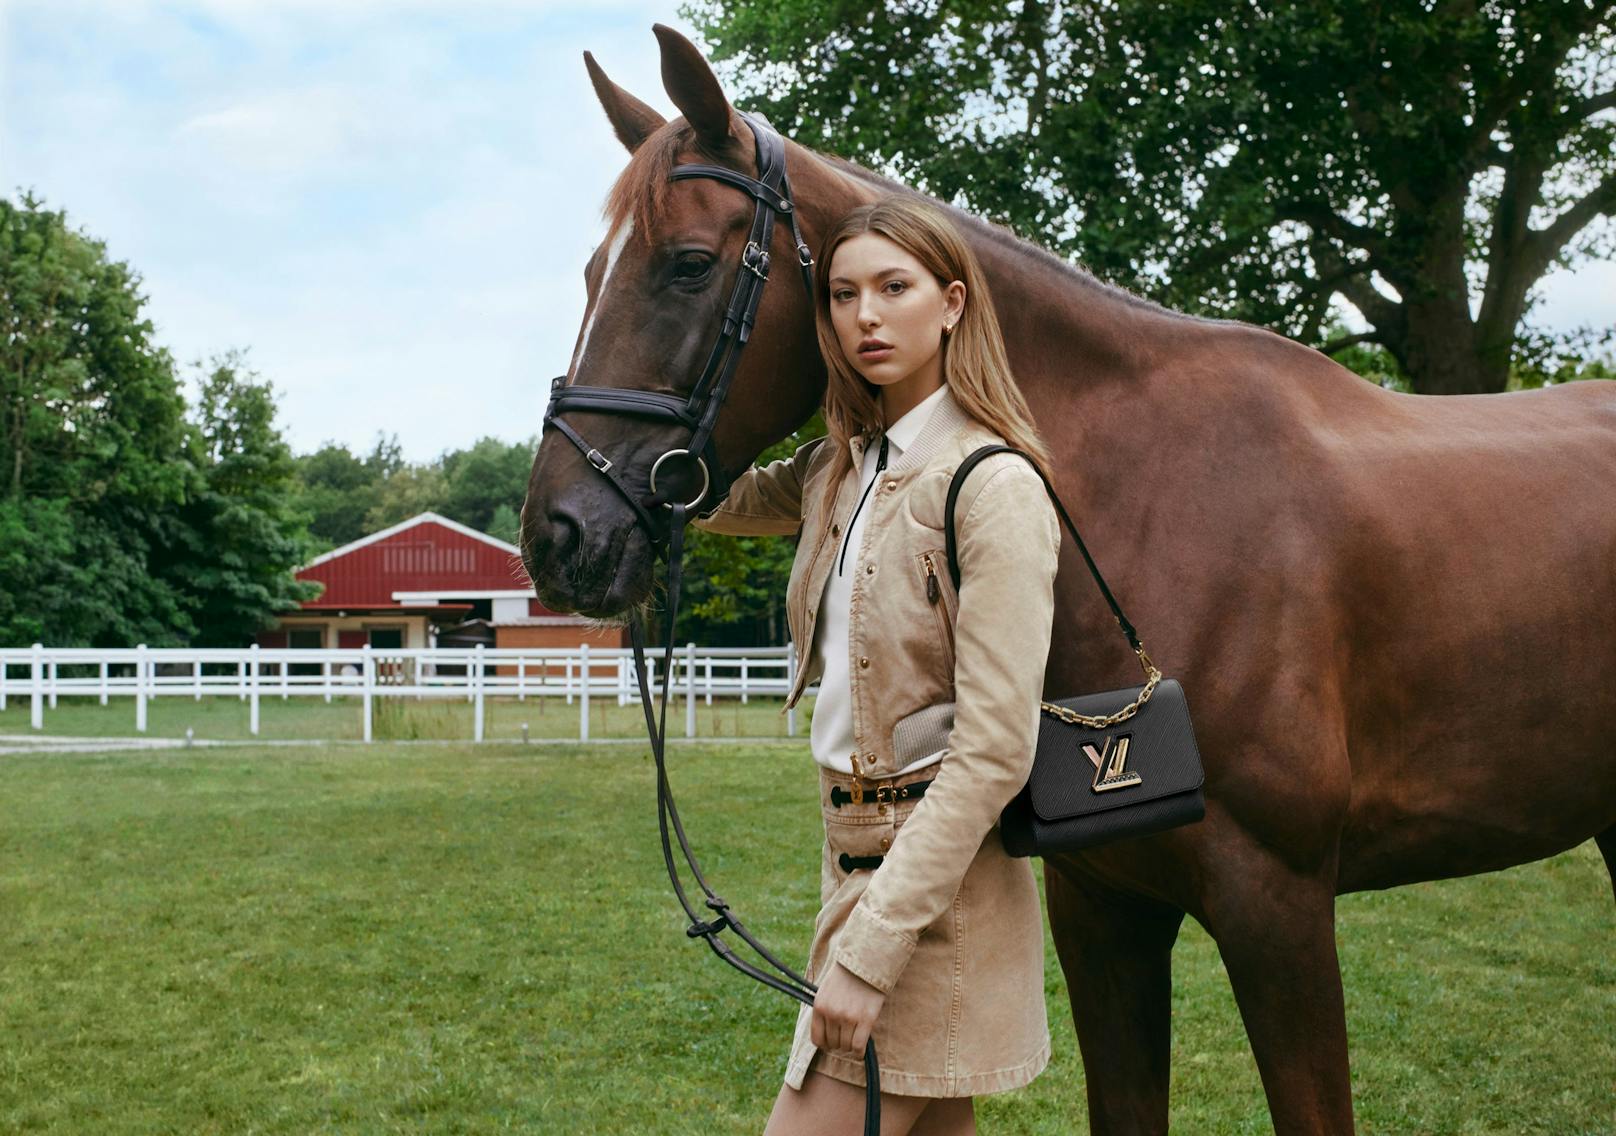 Eve Jobs ist begeisterte Reiterin. Louis Vuitton fotografierte das junge Model deswegen auch gleich hoch zu Ross und im Reitstall. Trés chic!